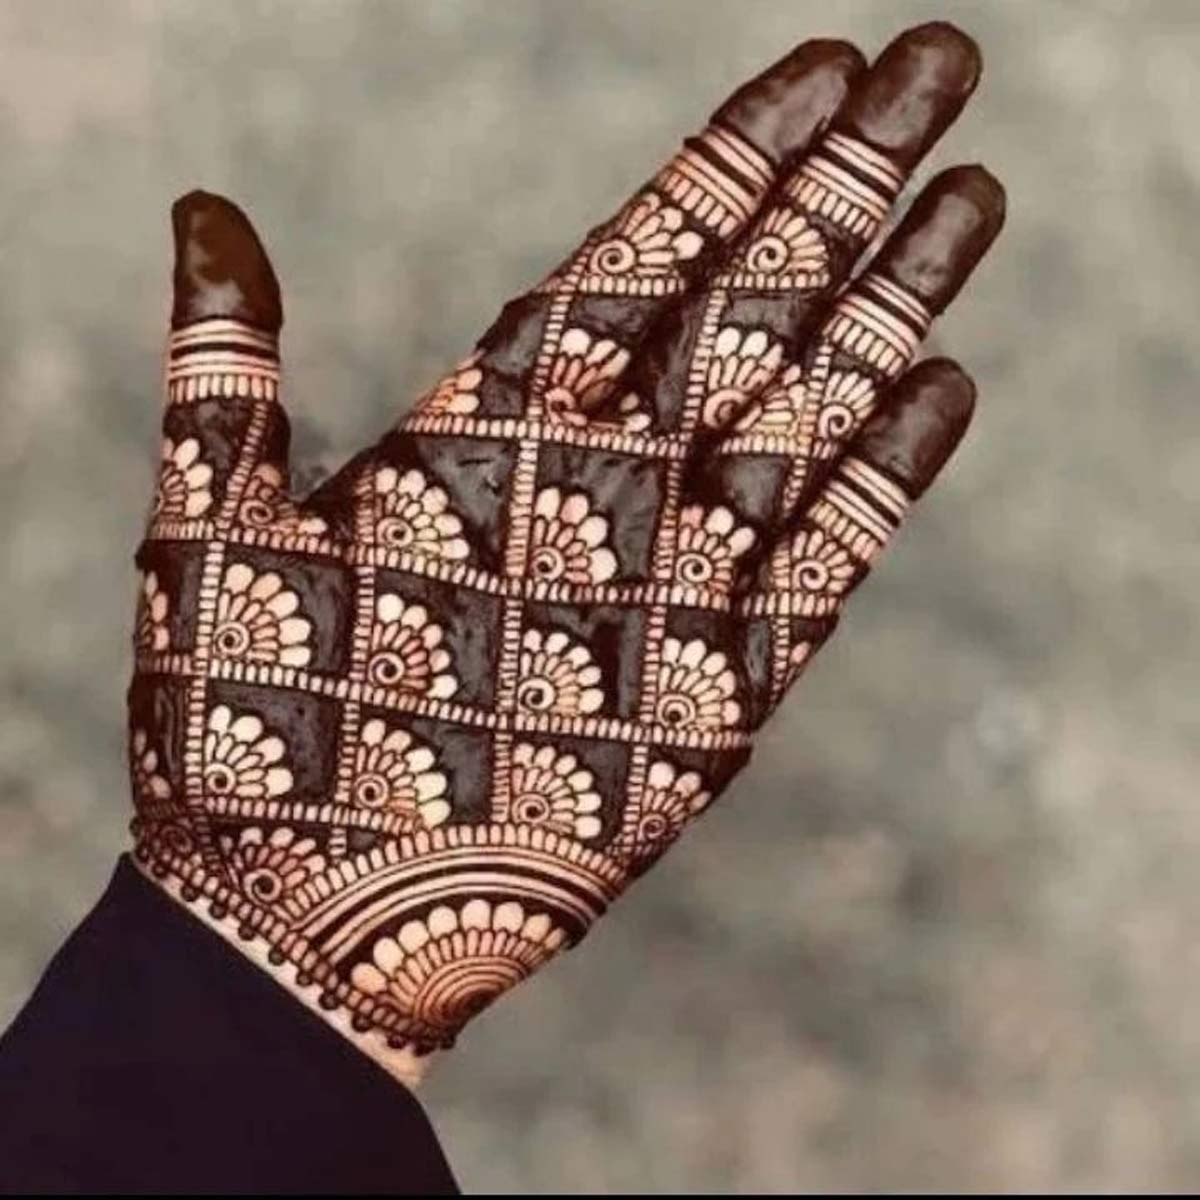 Engagement Mehndi Designs: सगाई के मौके पर दुल्हन के हाथों की शोभा बढ़ाएंगी  मेहंदी की ये 5 डिजाइंस | mehndi designs for engagement ceremony | HerZindagi